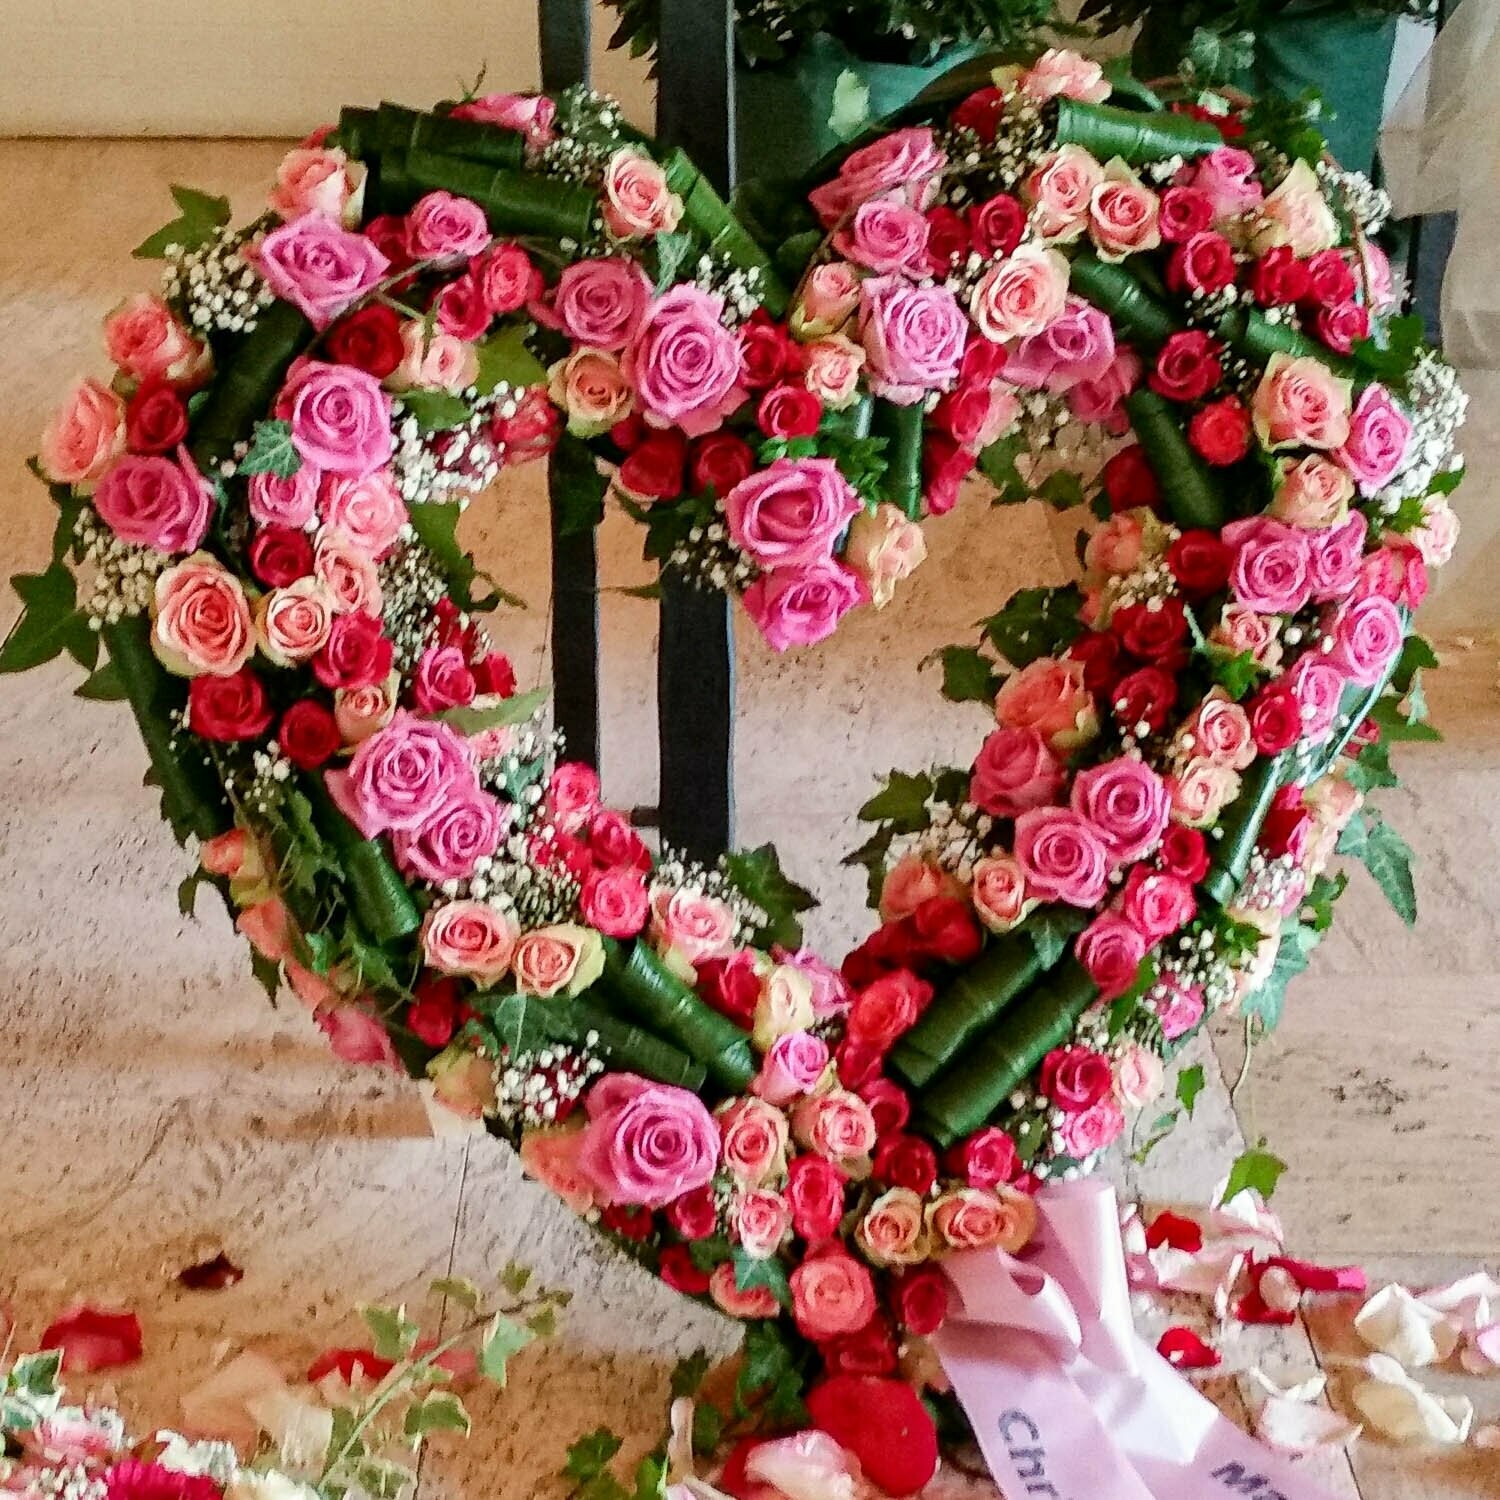 Trauer-Herz mit pink-rosa Rosen, offen strukturiert gearbeitet, ca. 70 cm